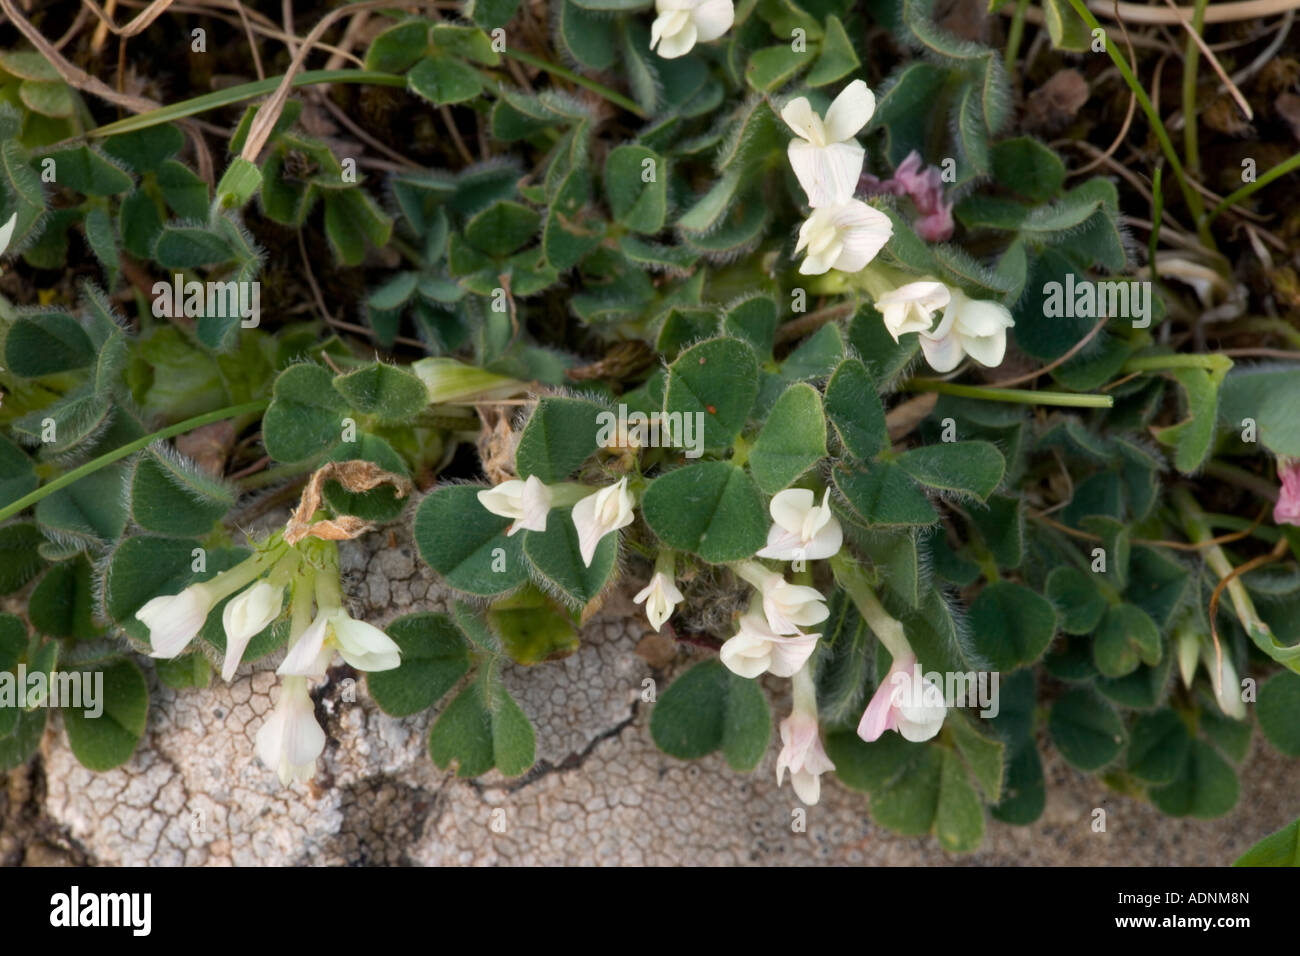 Subterranean clover Trifolium subterraneum Dorset Stock Photo